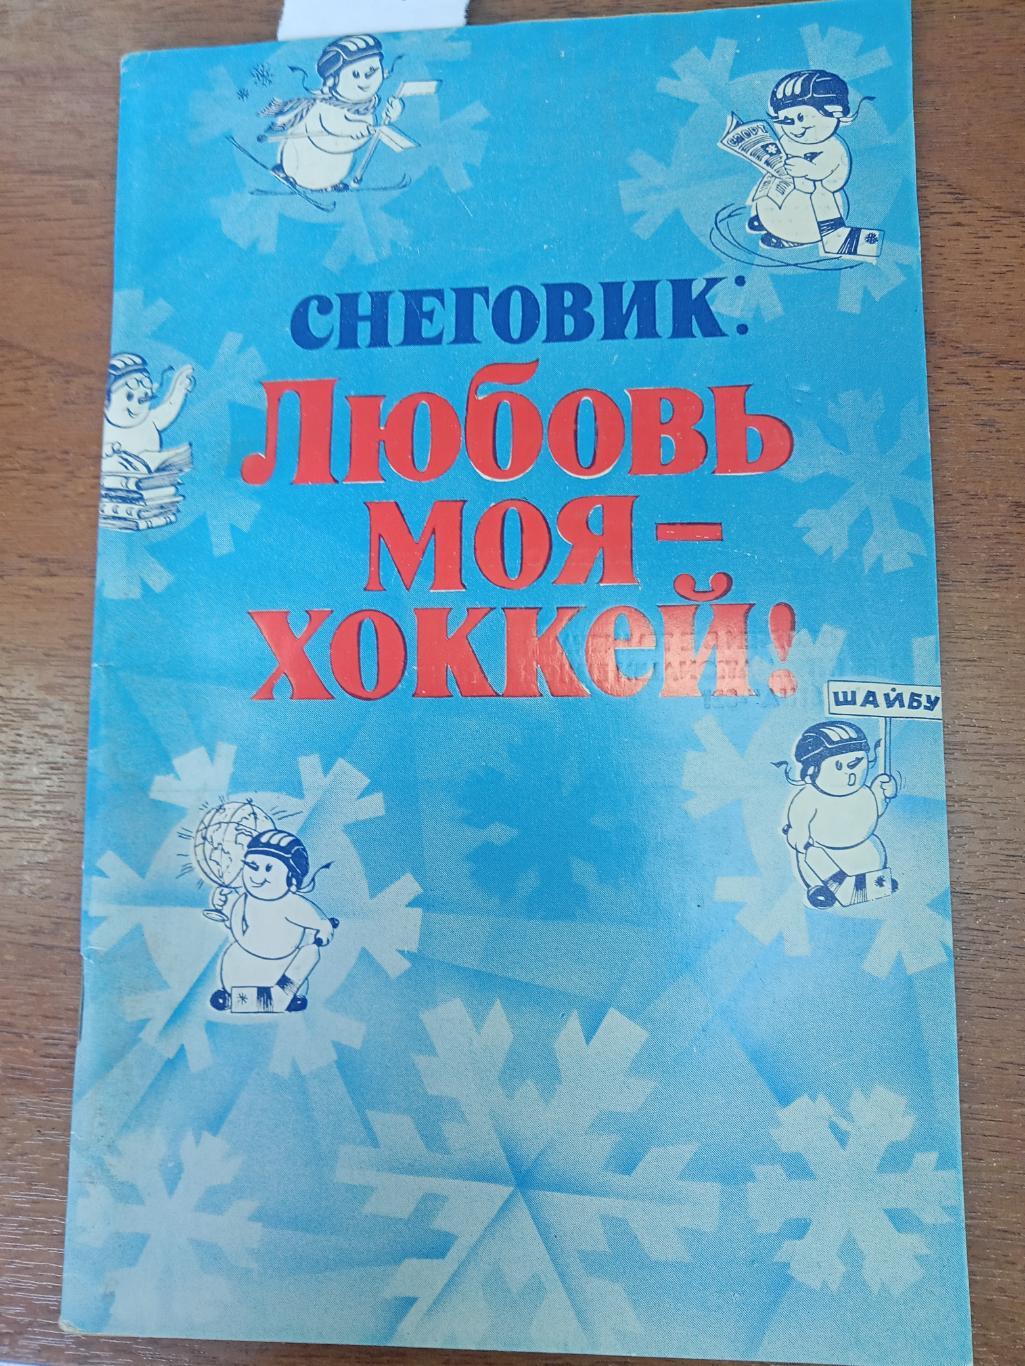 Хоккей. Календарь справочник. ИЗВЕСТИЯ. Москва 1982.